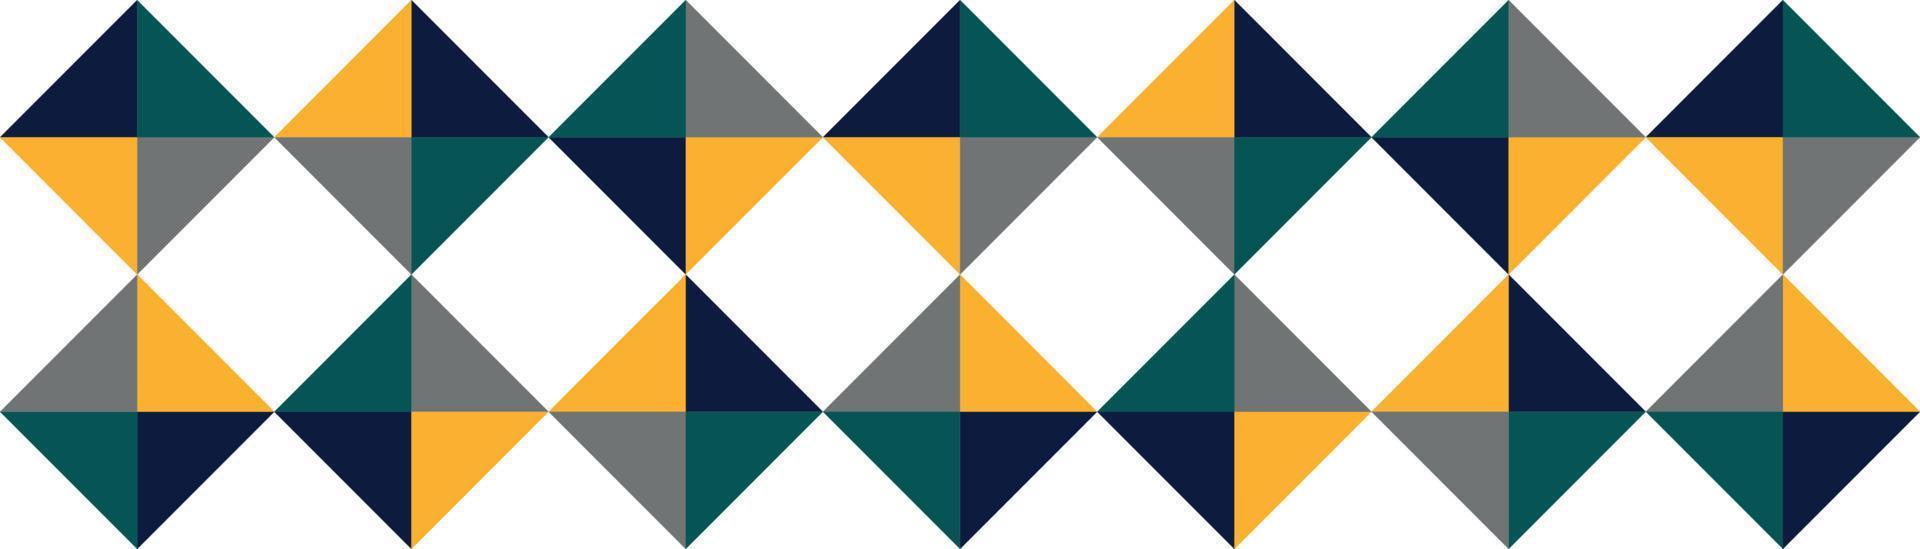 padrão de fundo branco panorâmico com quadrados coloridos - vetor